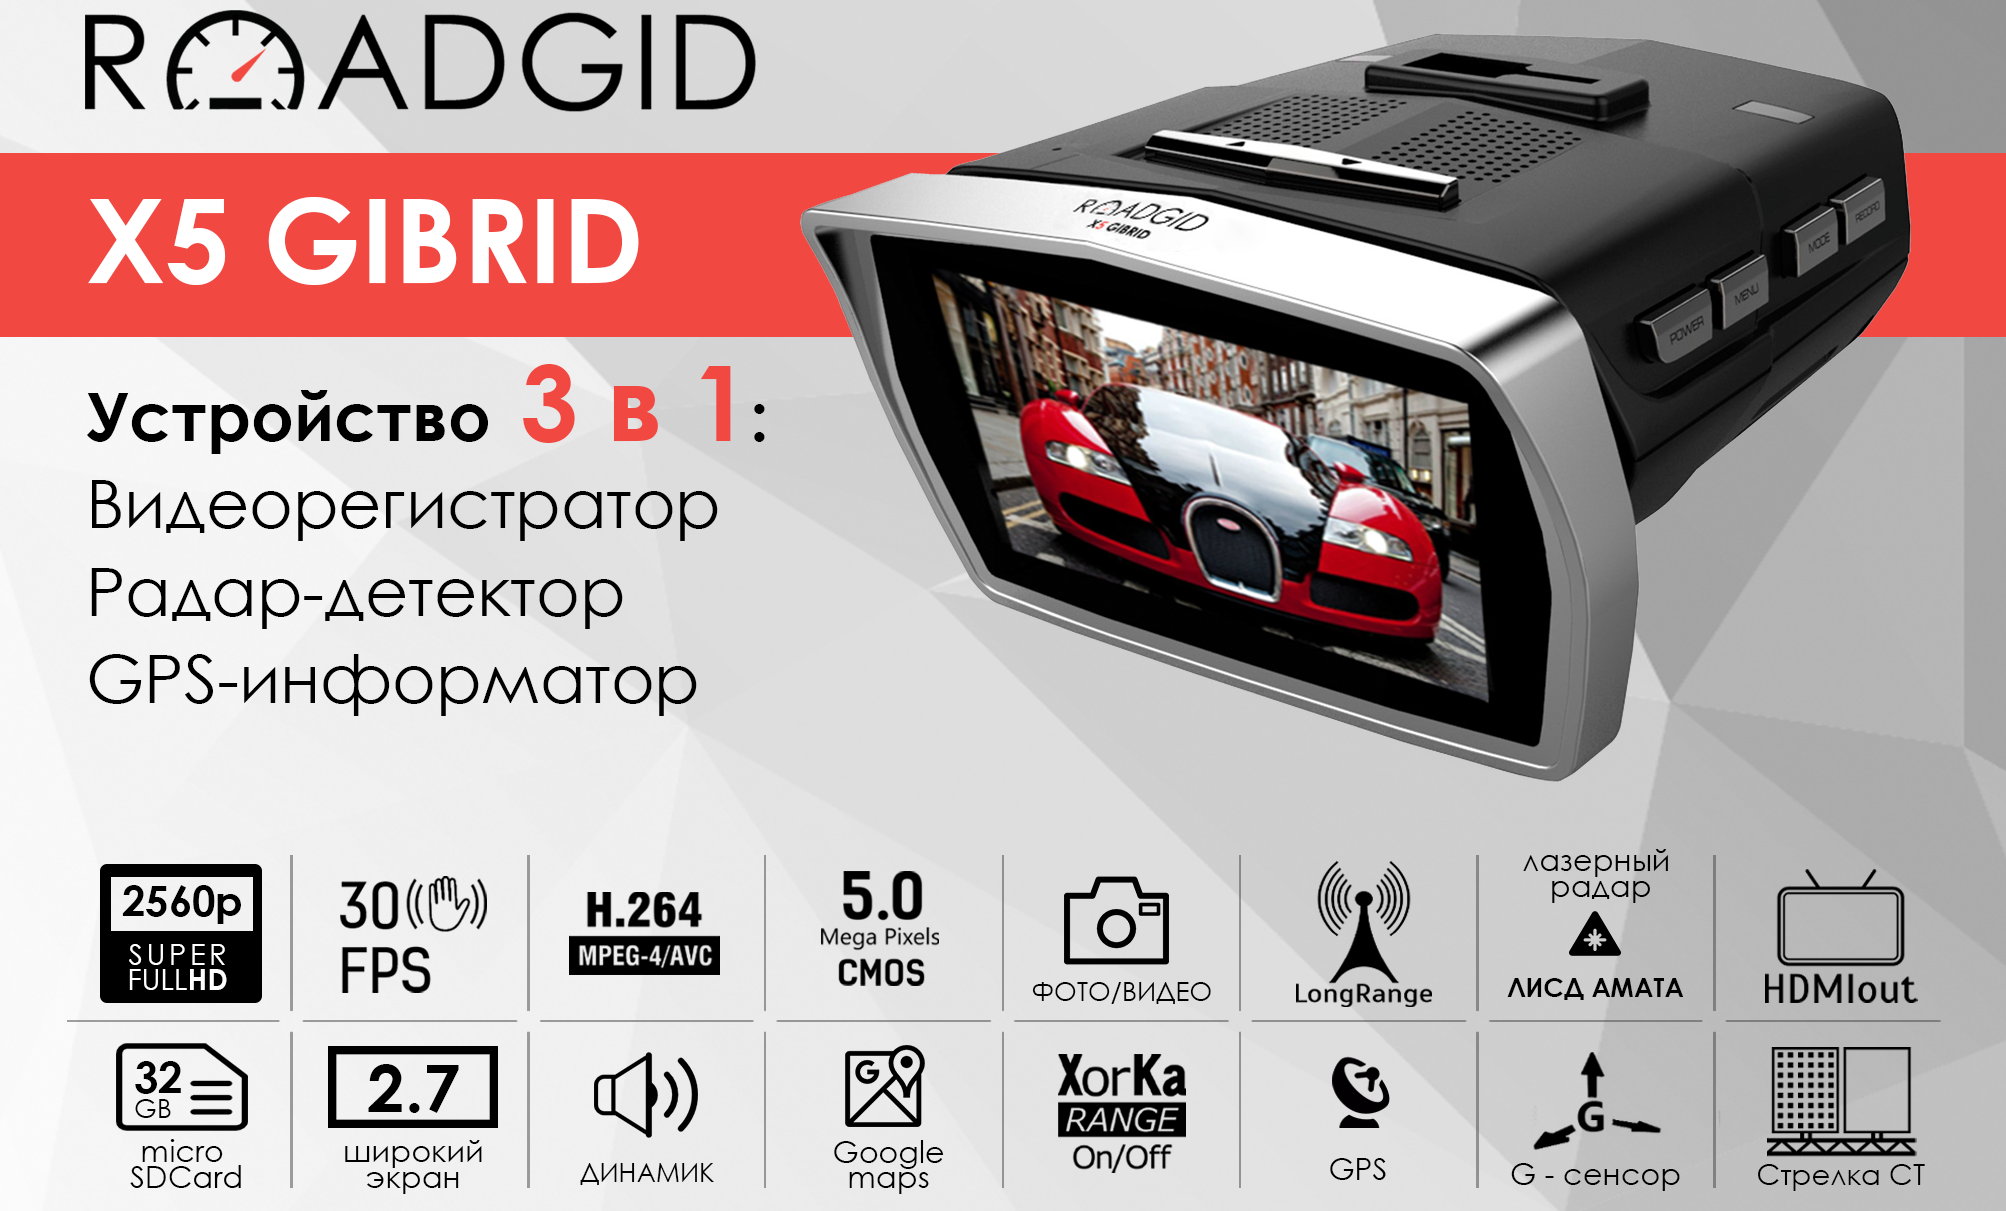 Roadgid X5 Gibrid - регистратор 3в1 купить недорого